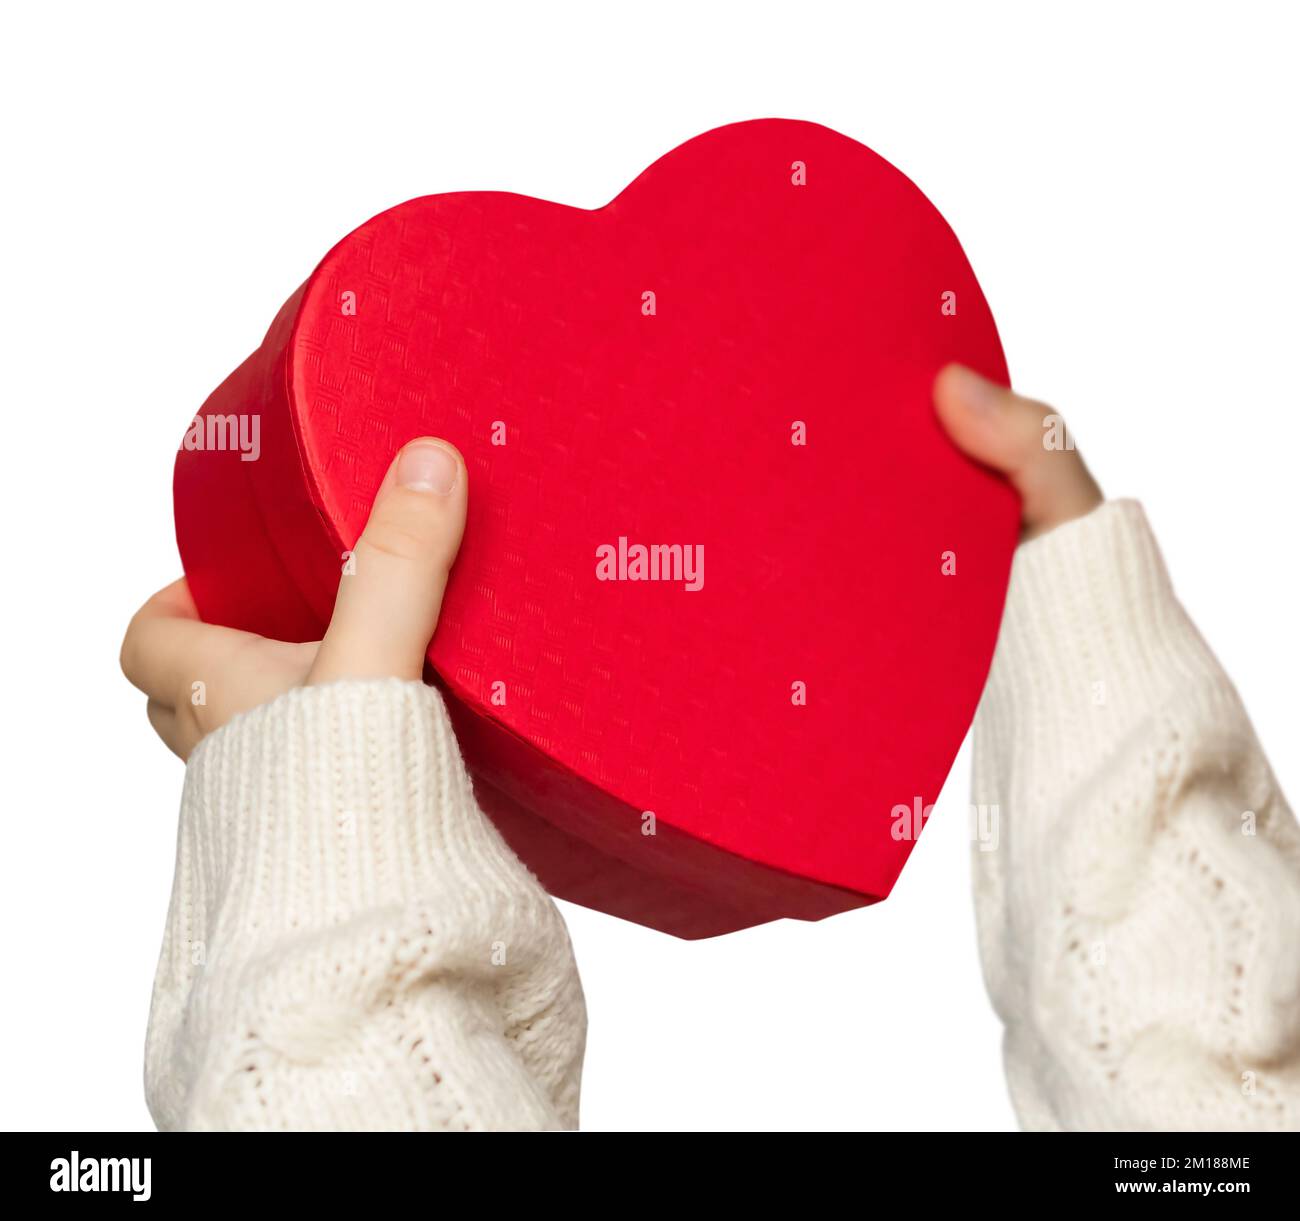 mains de fille tenant le présent en forme de coeur rouge, boîte-cadeau, isolé sur fond blanc. Concept d'amour, de miséricorde et de soin Banque D'Images